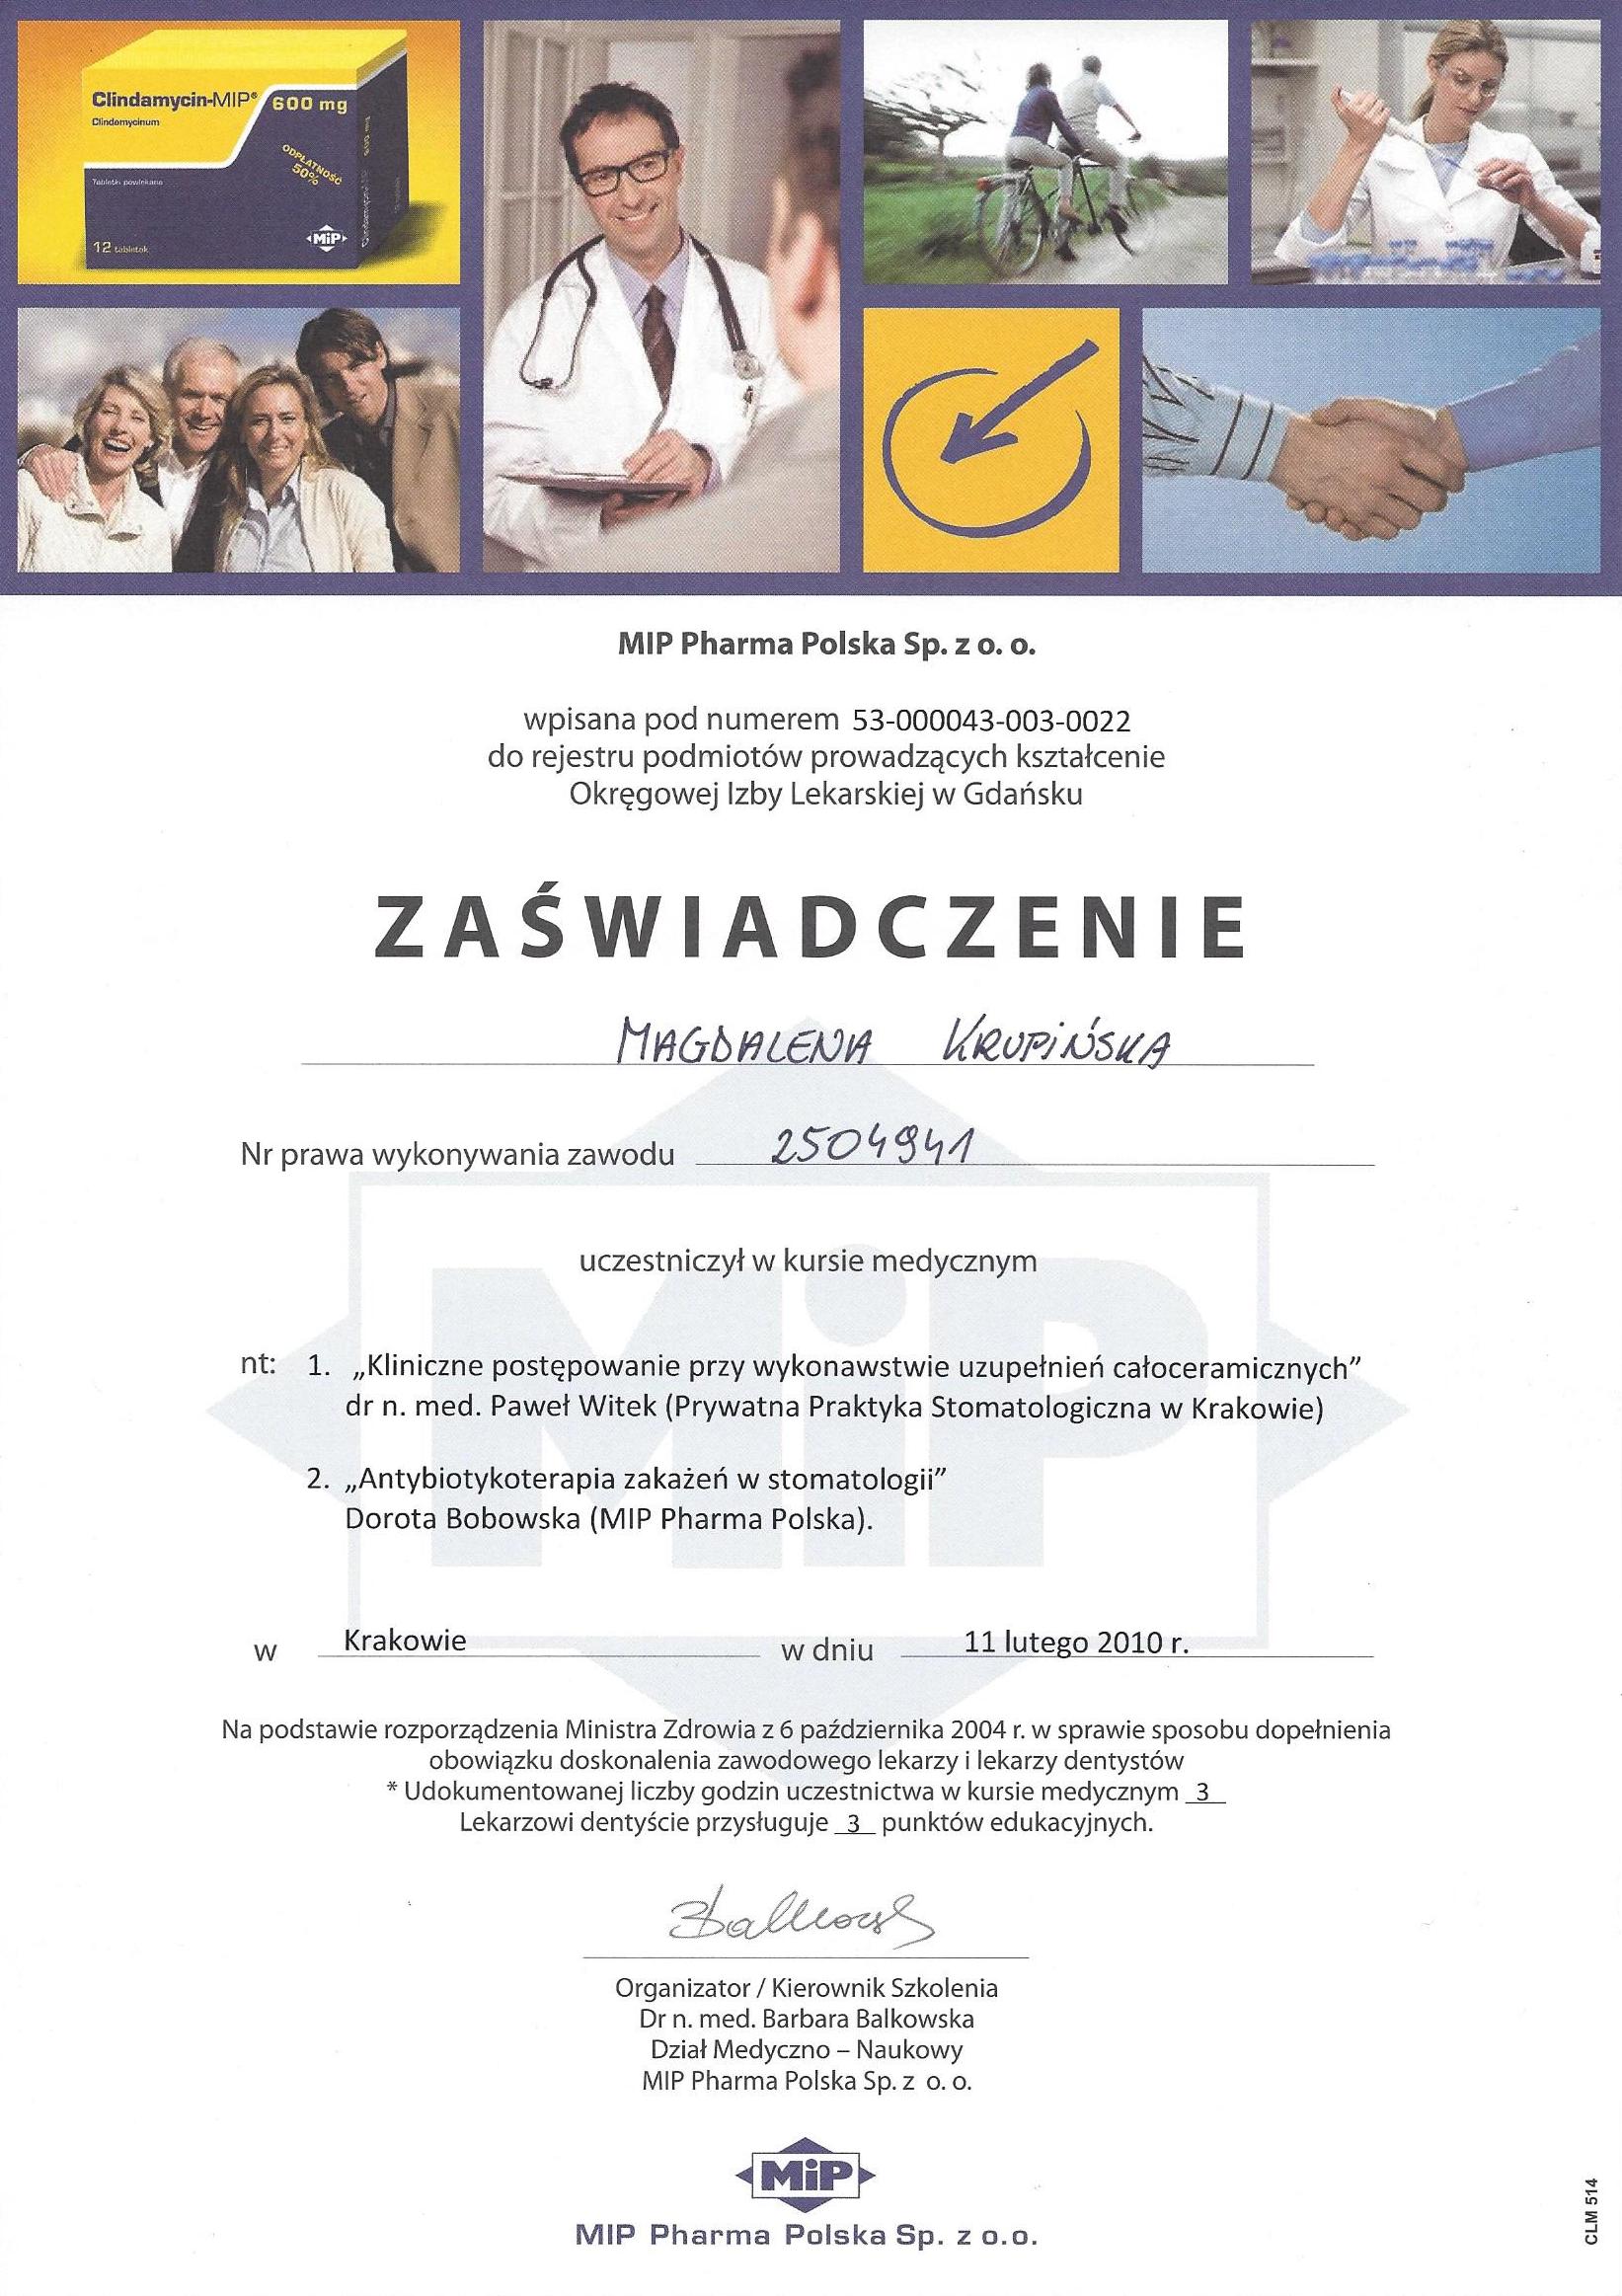 Magdalena Krupińska certyfikat 46